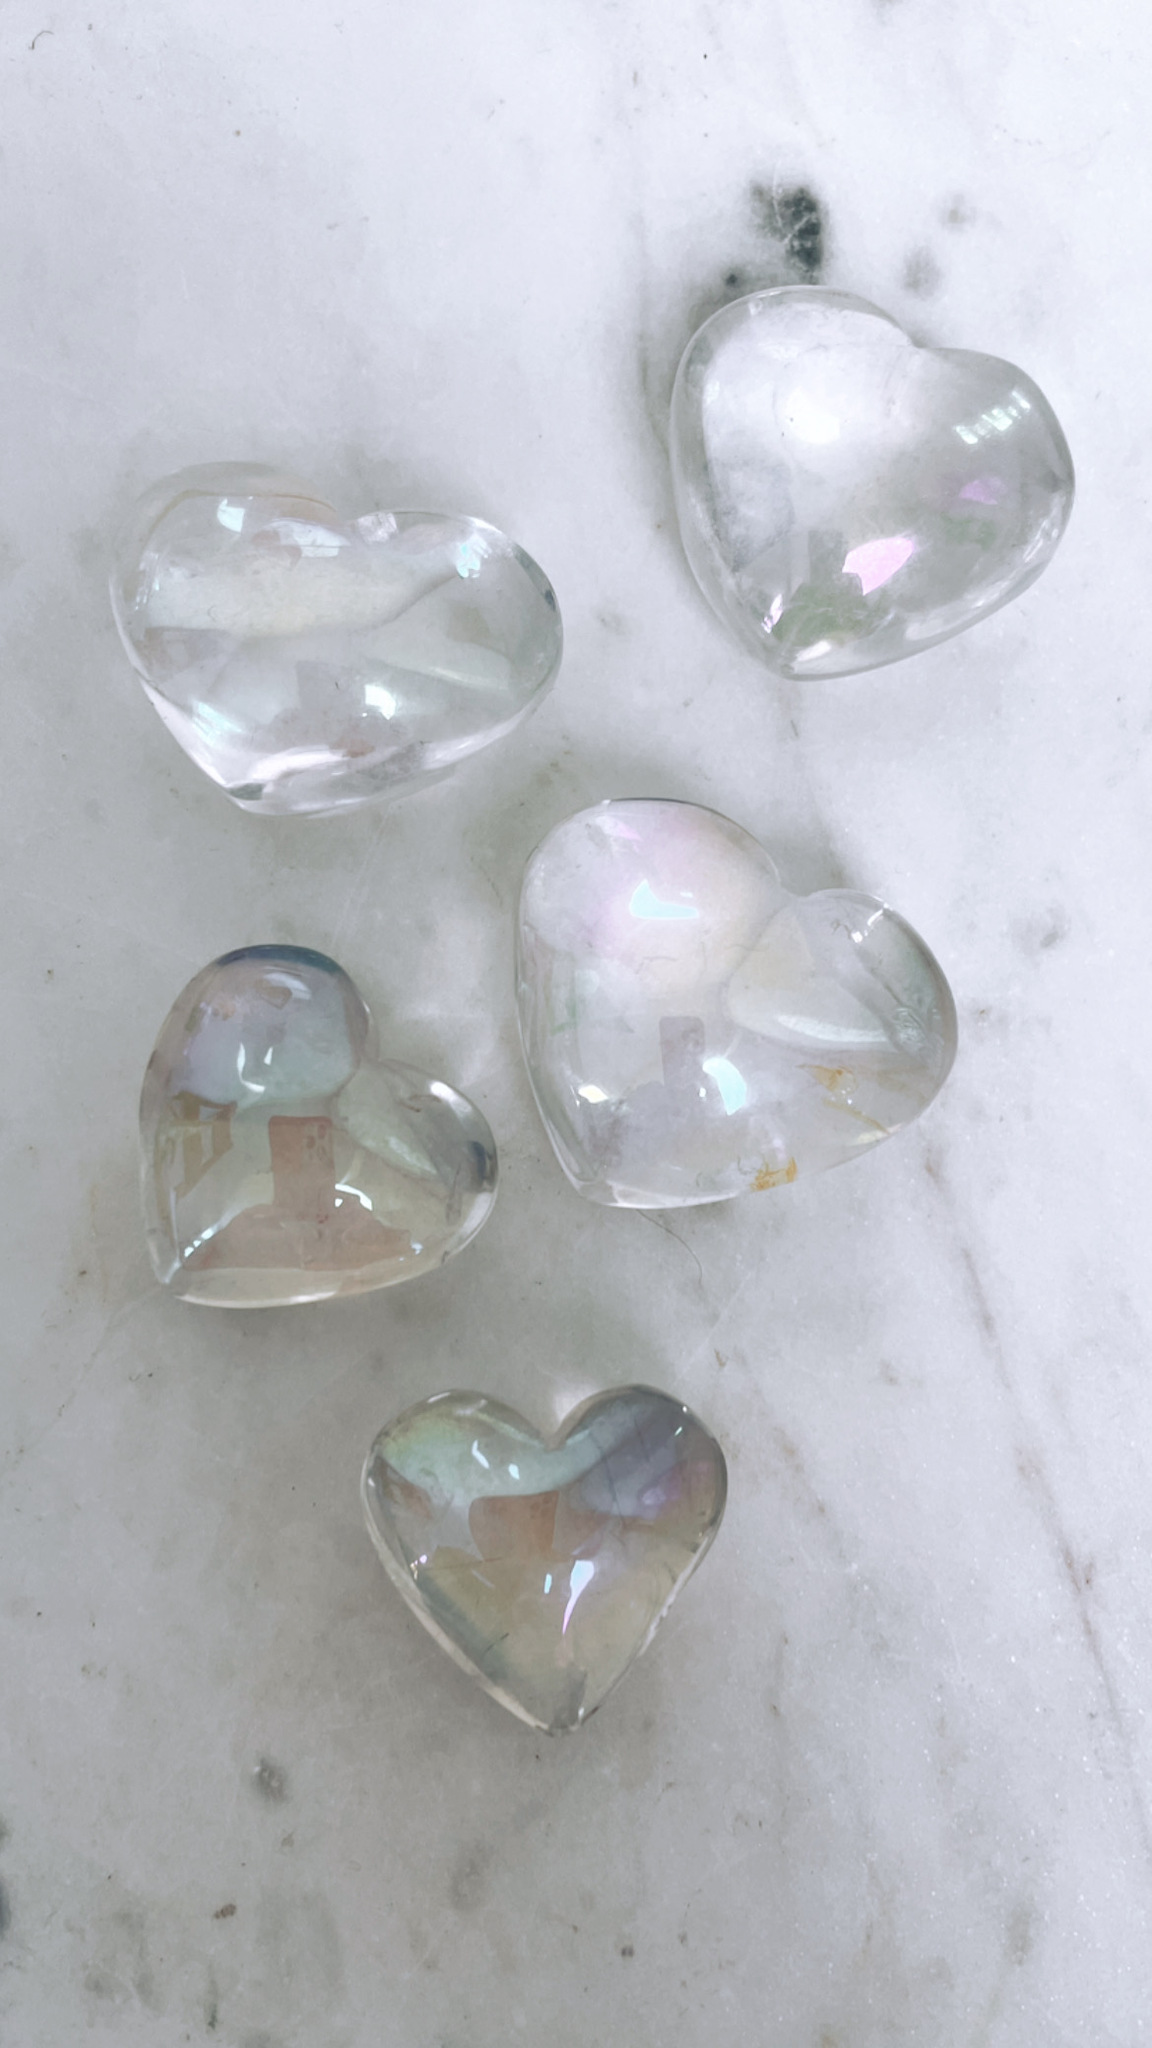 Bergkristall med aura, hjärta